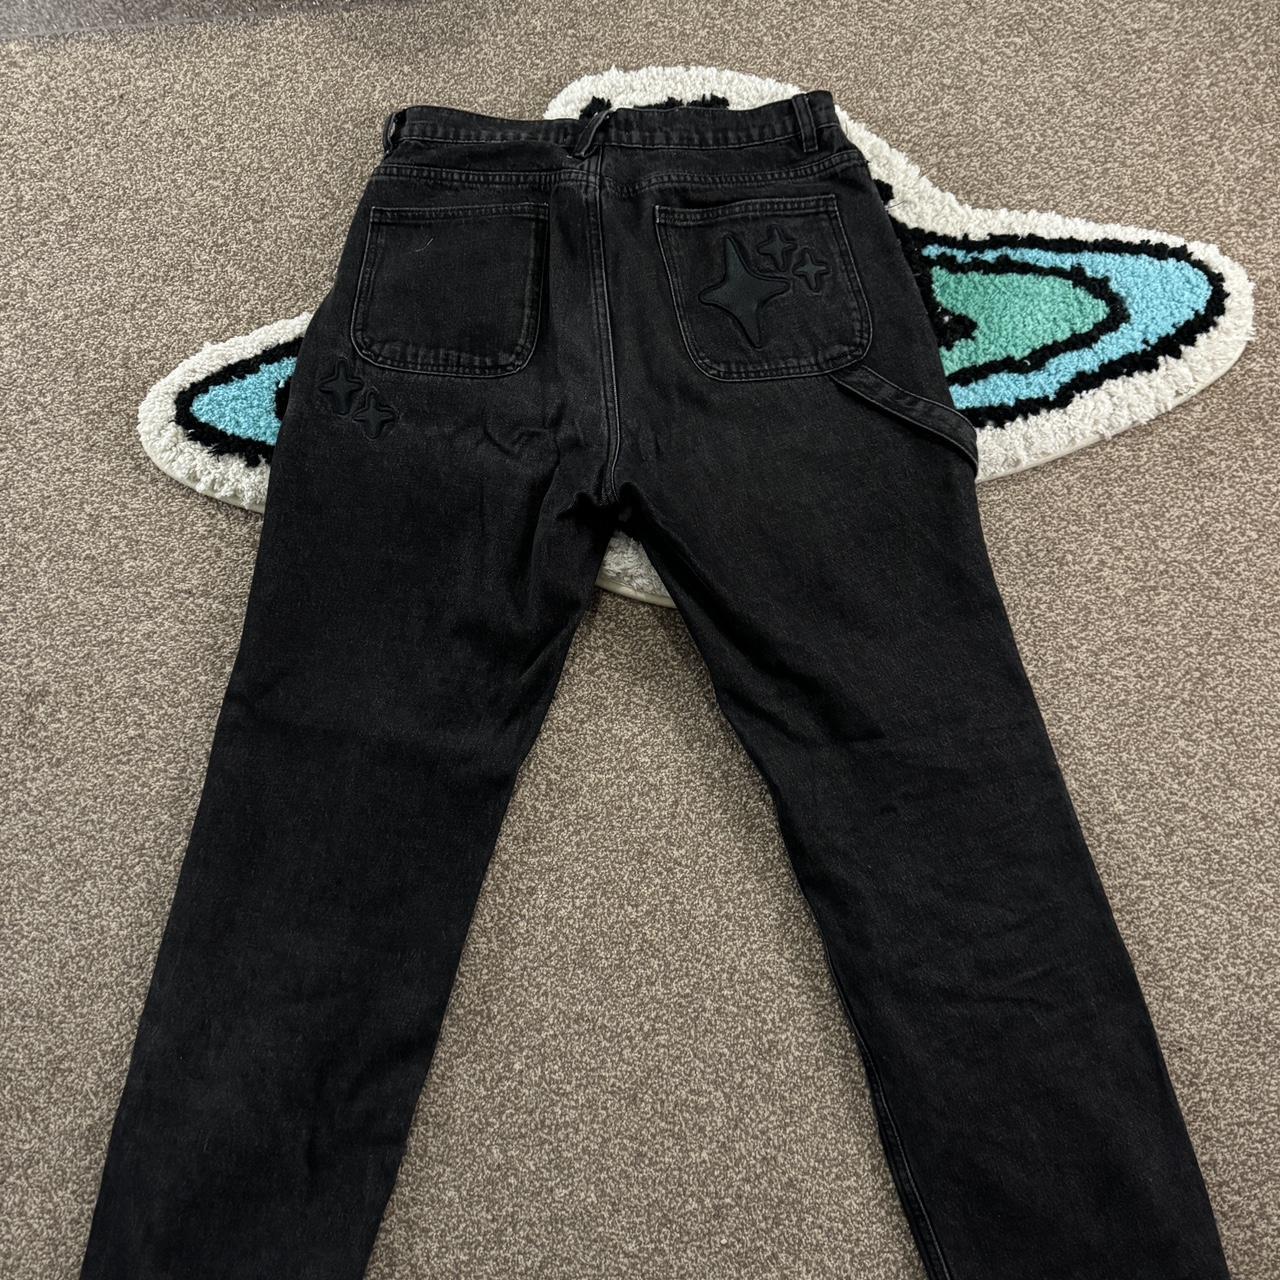 Broken Planet Black Jeans, size 30w 30l. I’ve had... - Depop